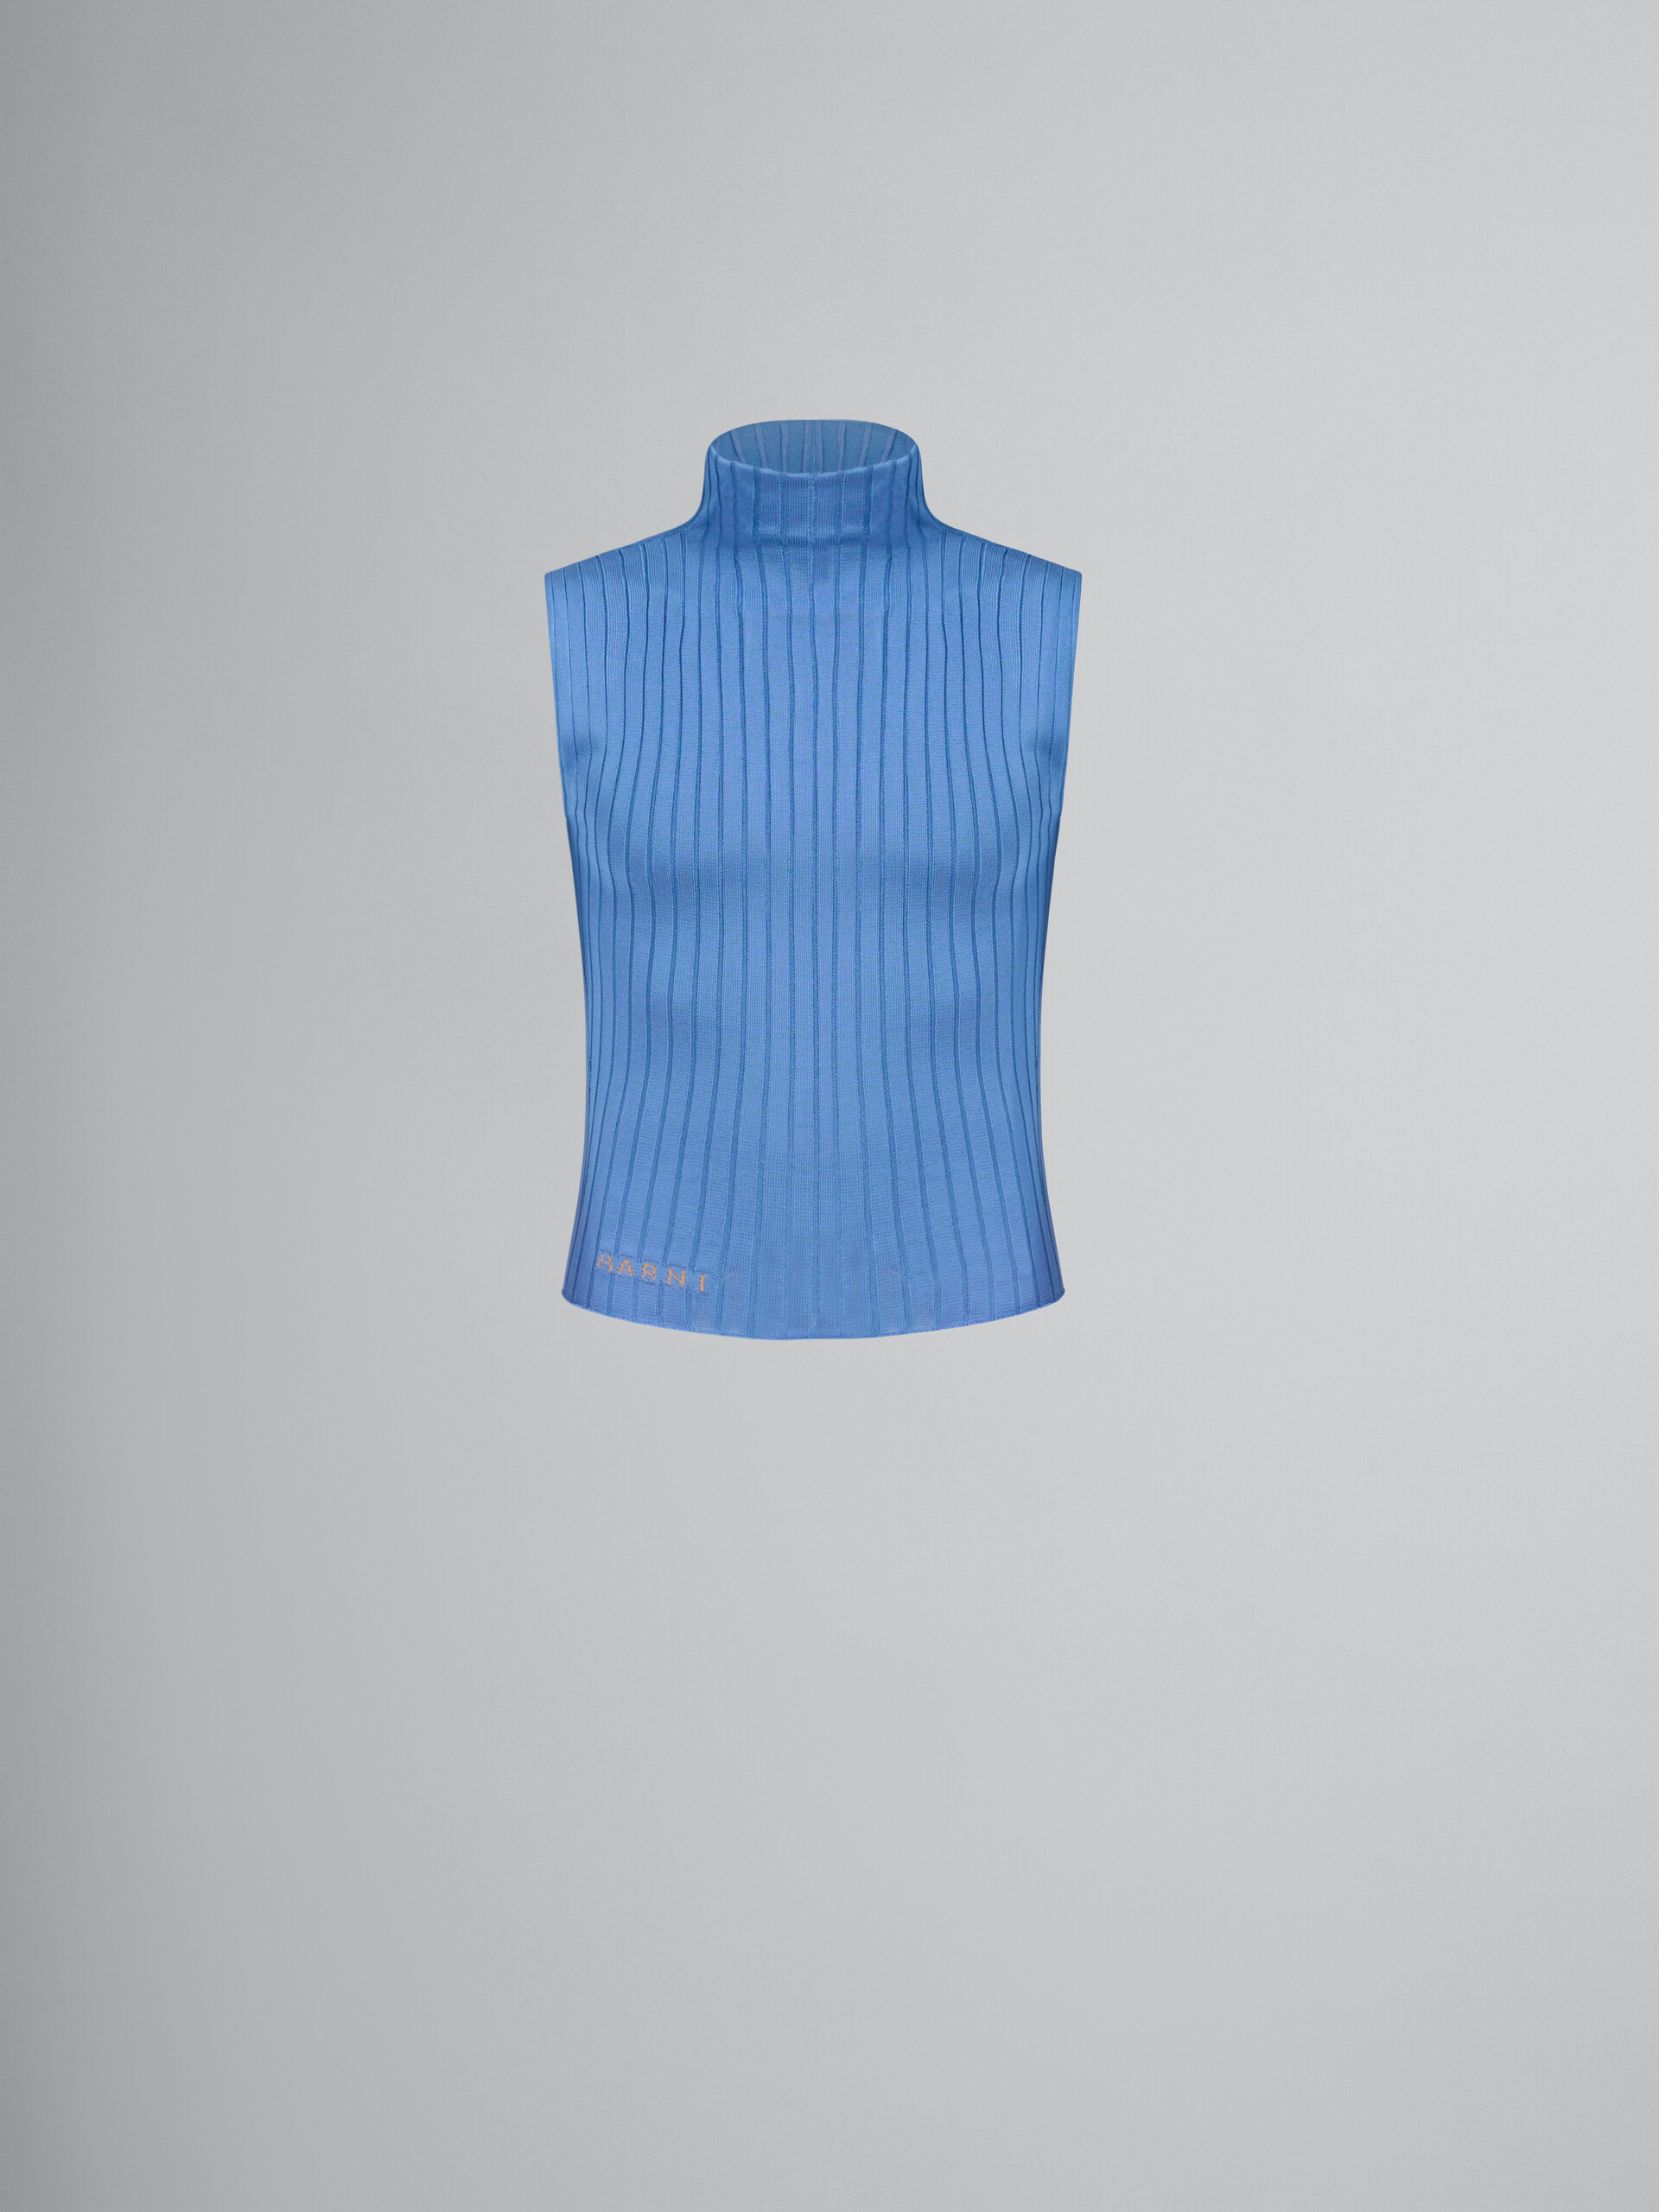 Blaue Weste mit Rollkragen aus gerippter Viskose - Pullover - Image 1